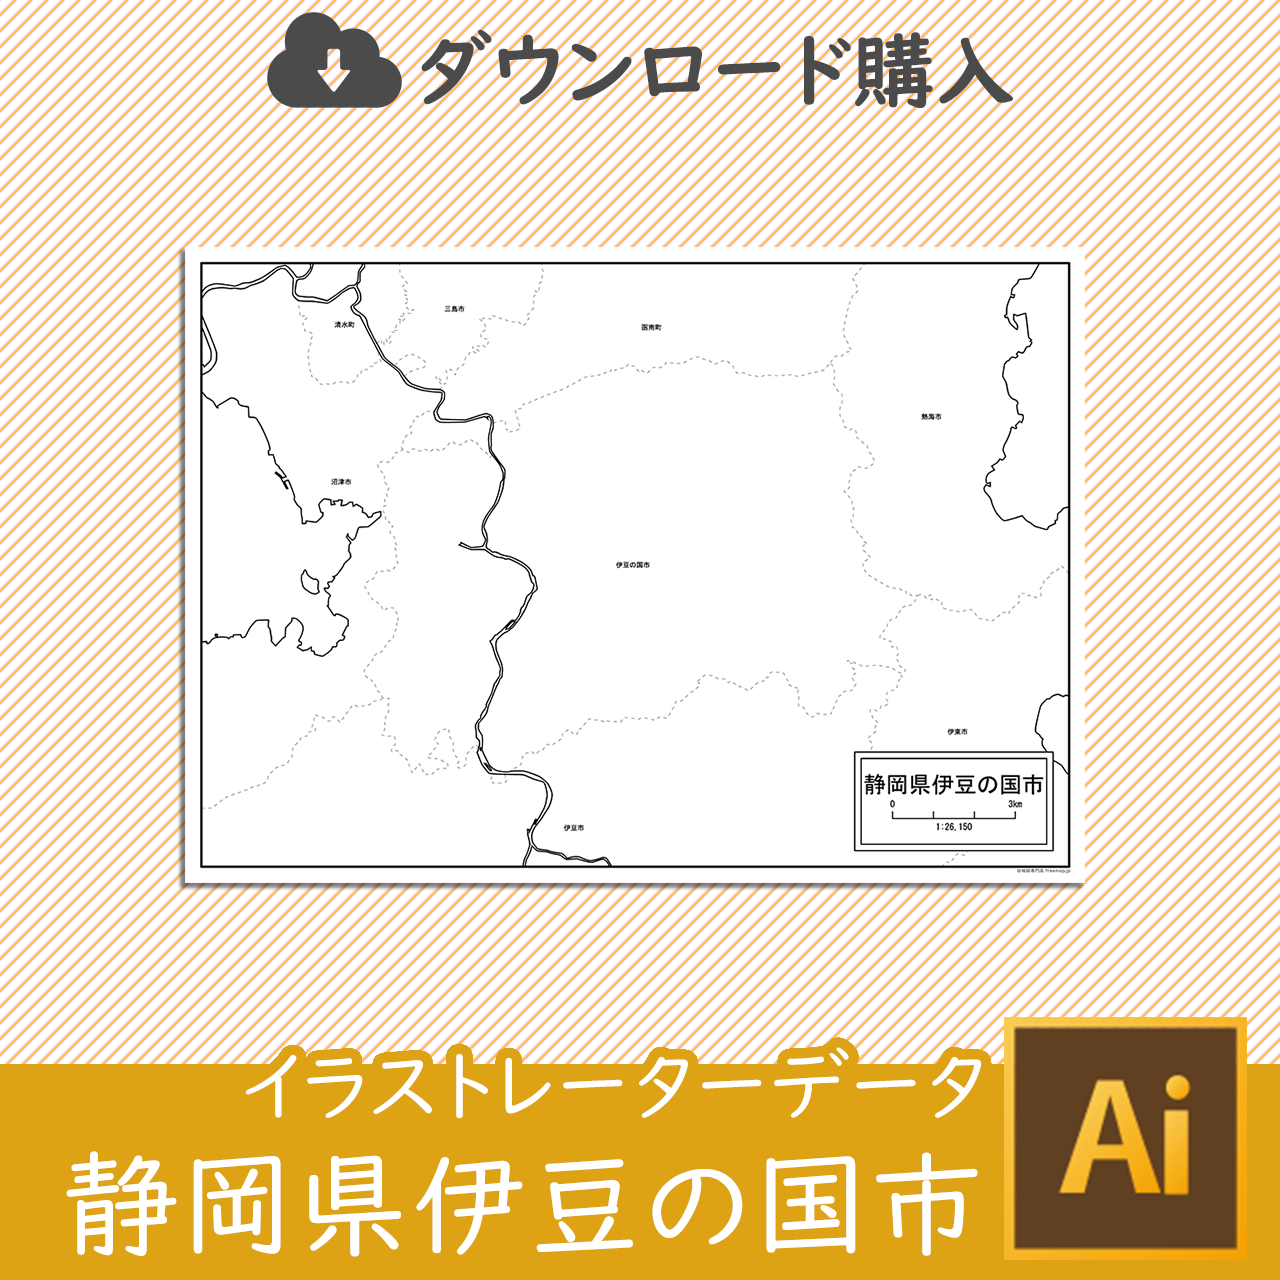 伊豆の国市のaiデータのサムネイル画像